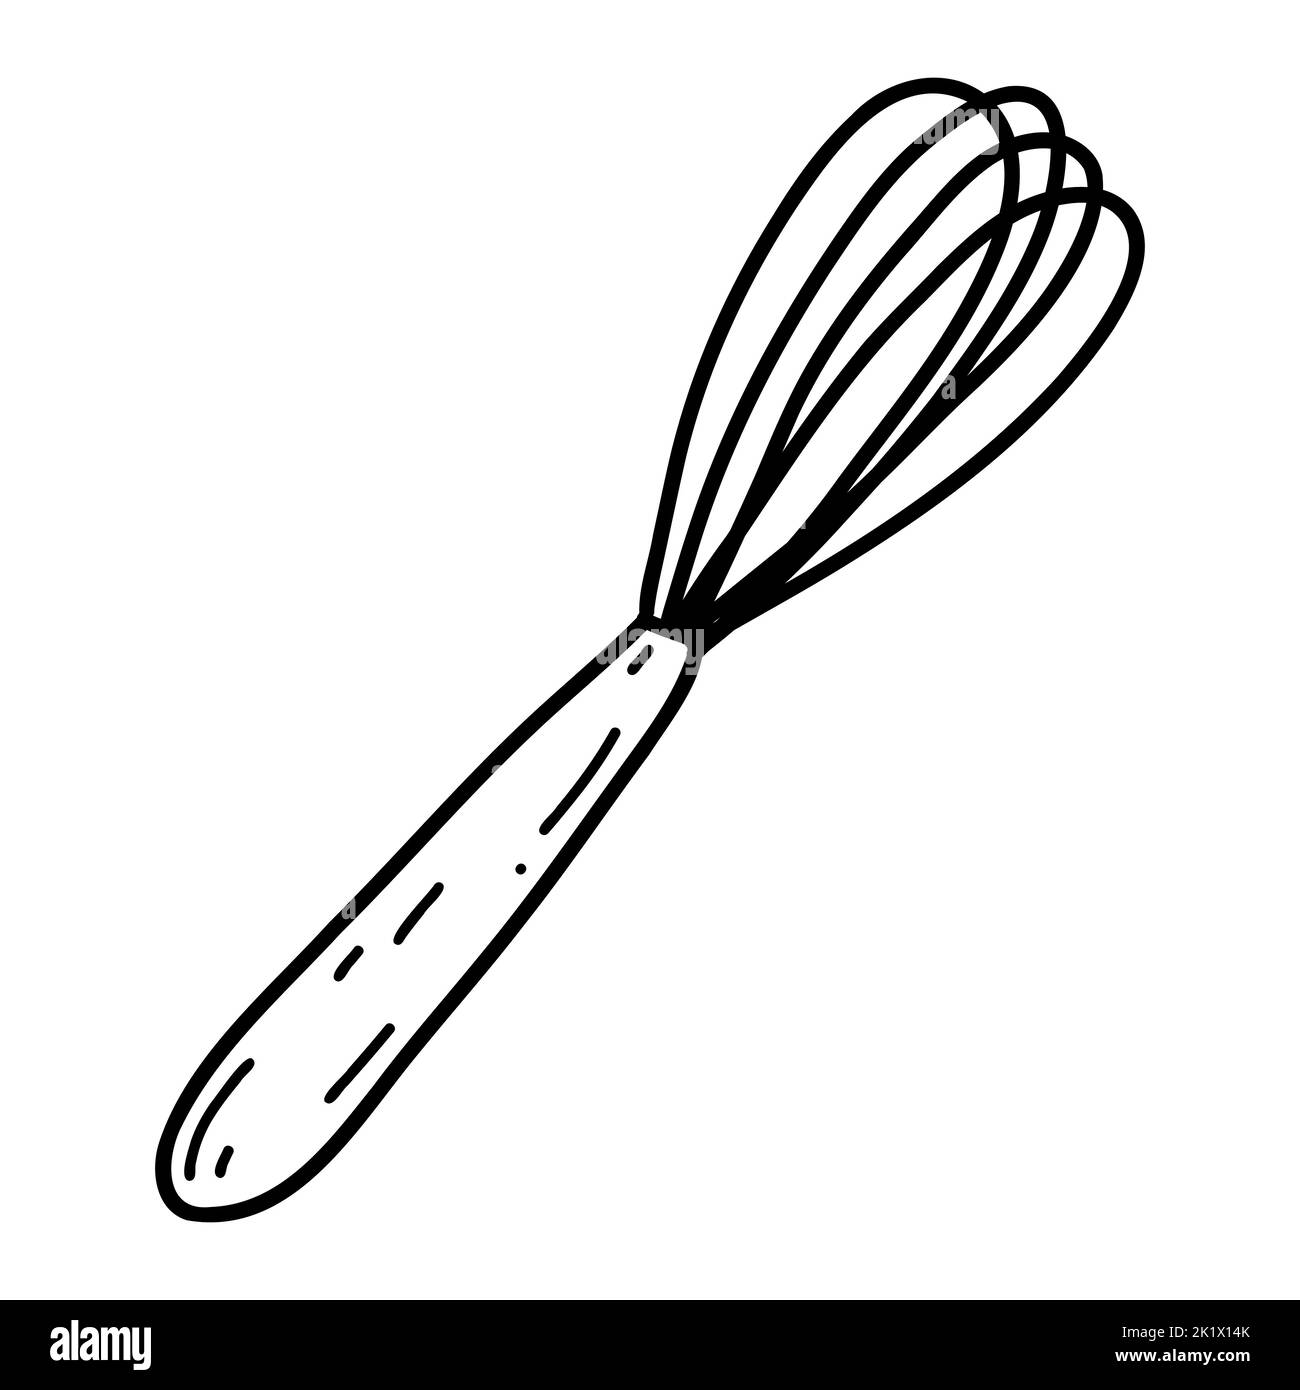 Schneebesen für die Küche. Vektor-Illustration von Quirl Symbol, Geschirr, kulinarische, Gebäck Werkzeuge. Stock Vektor